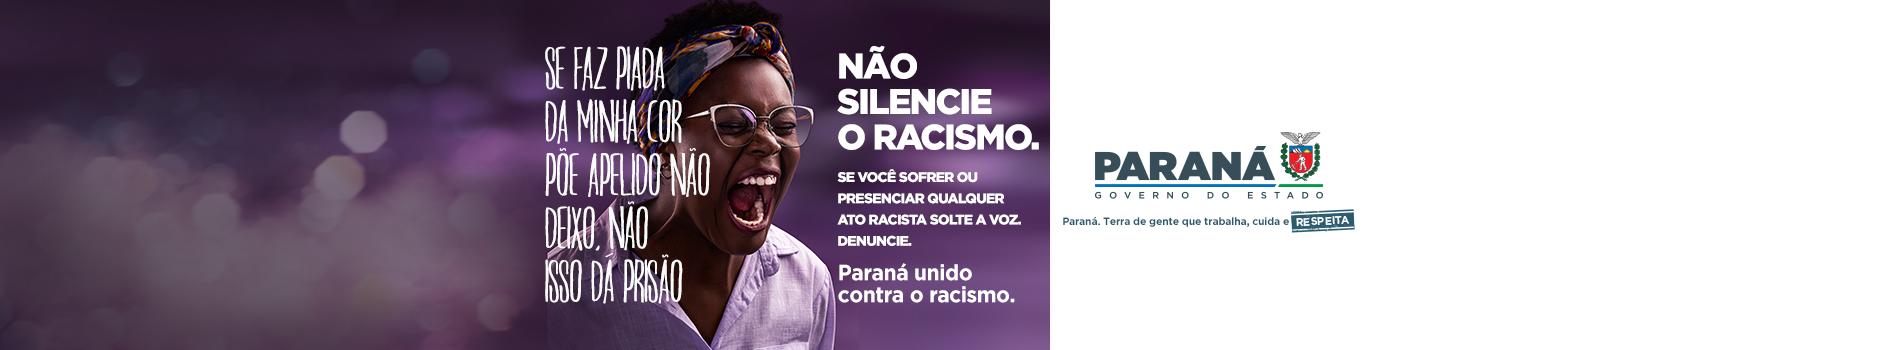 Paraná Unido Contra o Racismo